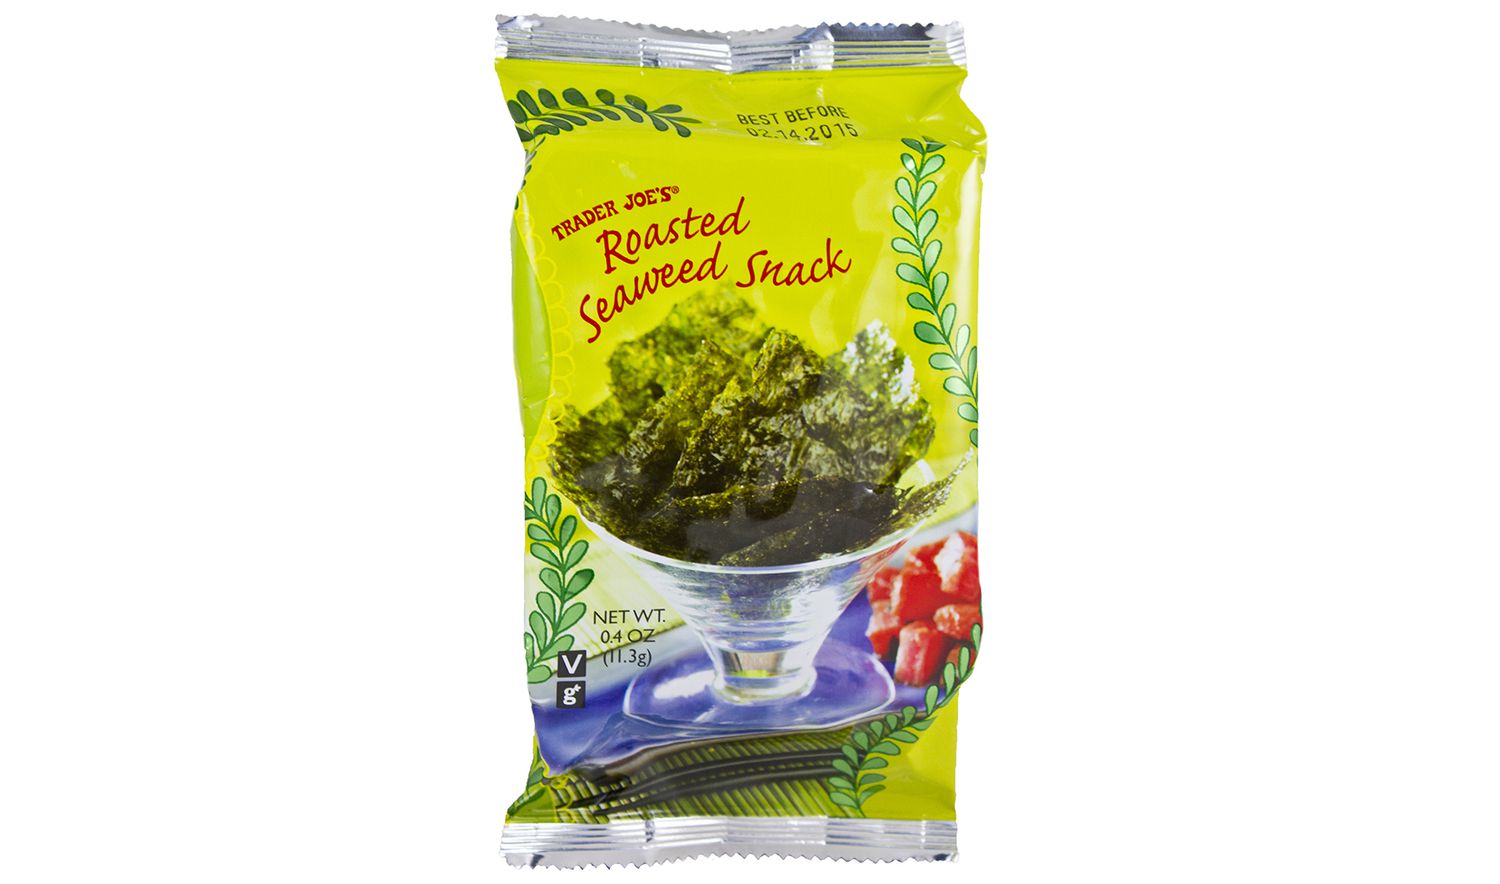 Package of Trader Joe’s Roasted Seaweed Snack